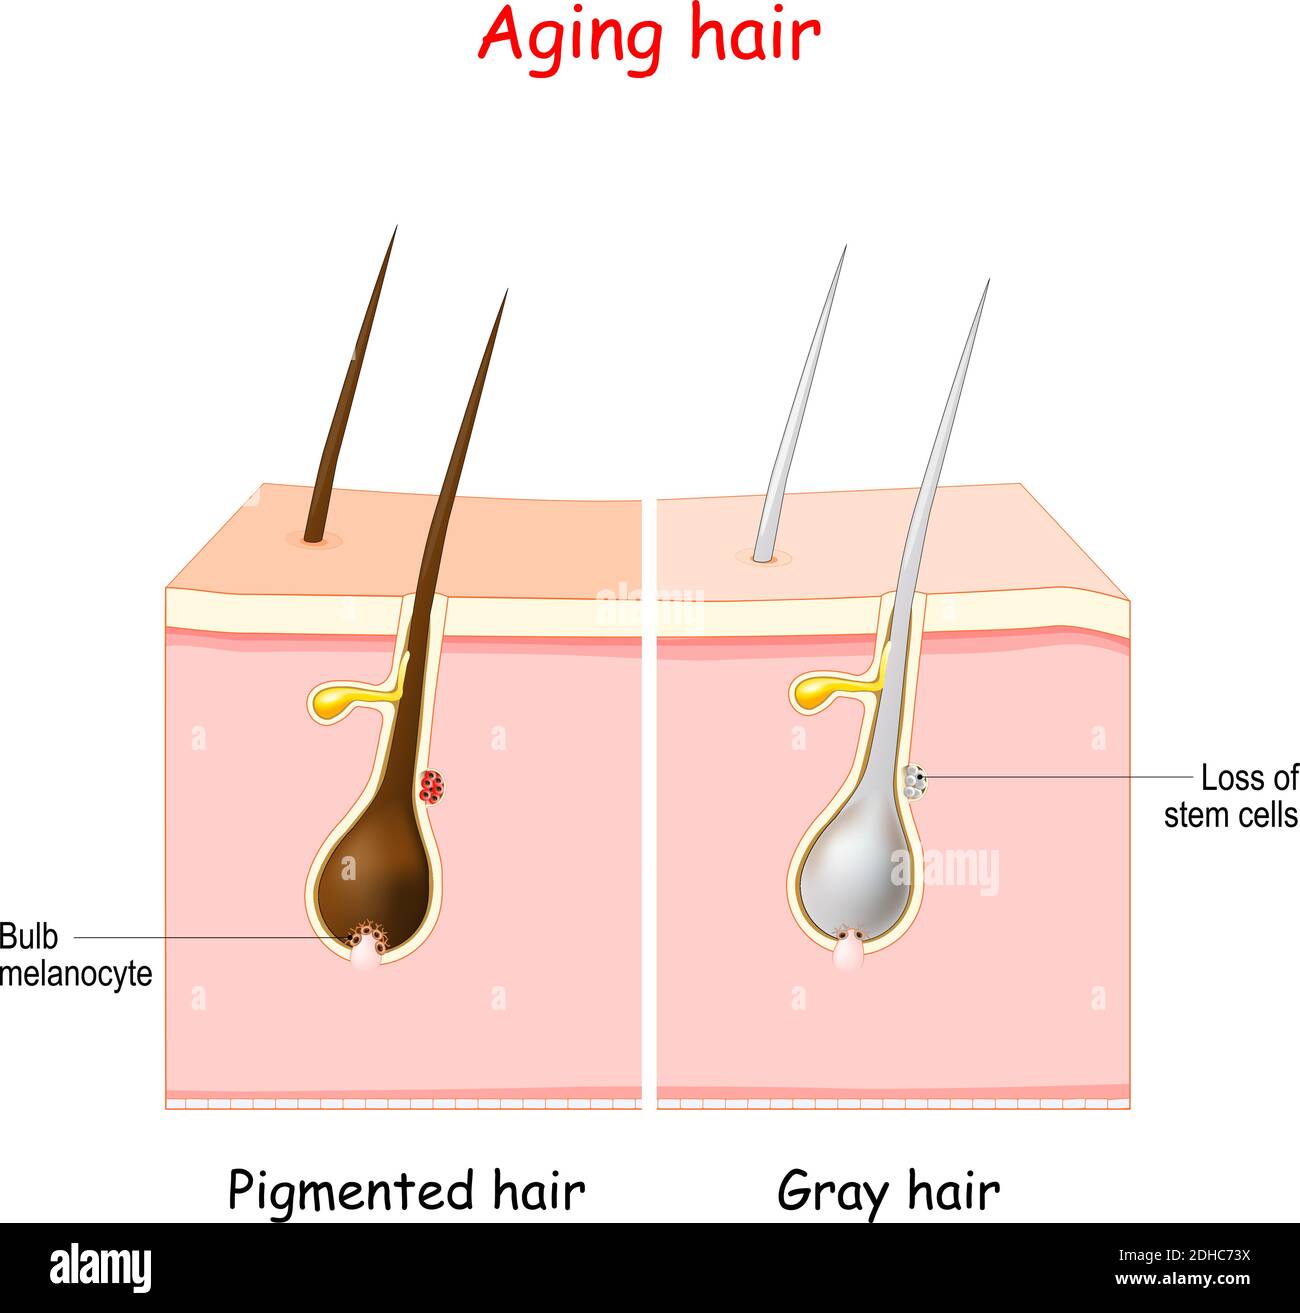 processo di invecchiamento attraverso i capelli grigi. Capelli pigmentati e grigi. Le cellule staminali ai follicoli piliferi producono melanociti, che producono e immagazzinano pigmento Illustrazione Vettoriale